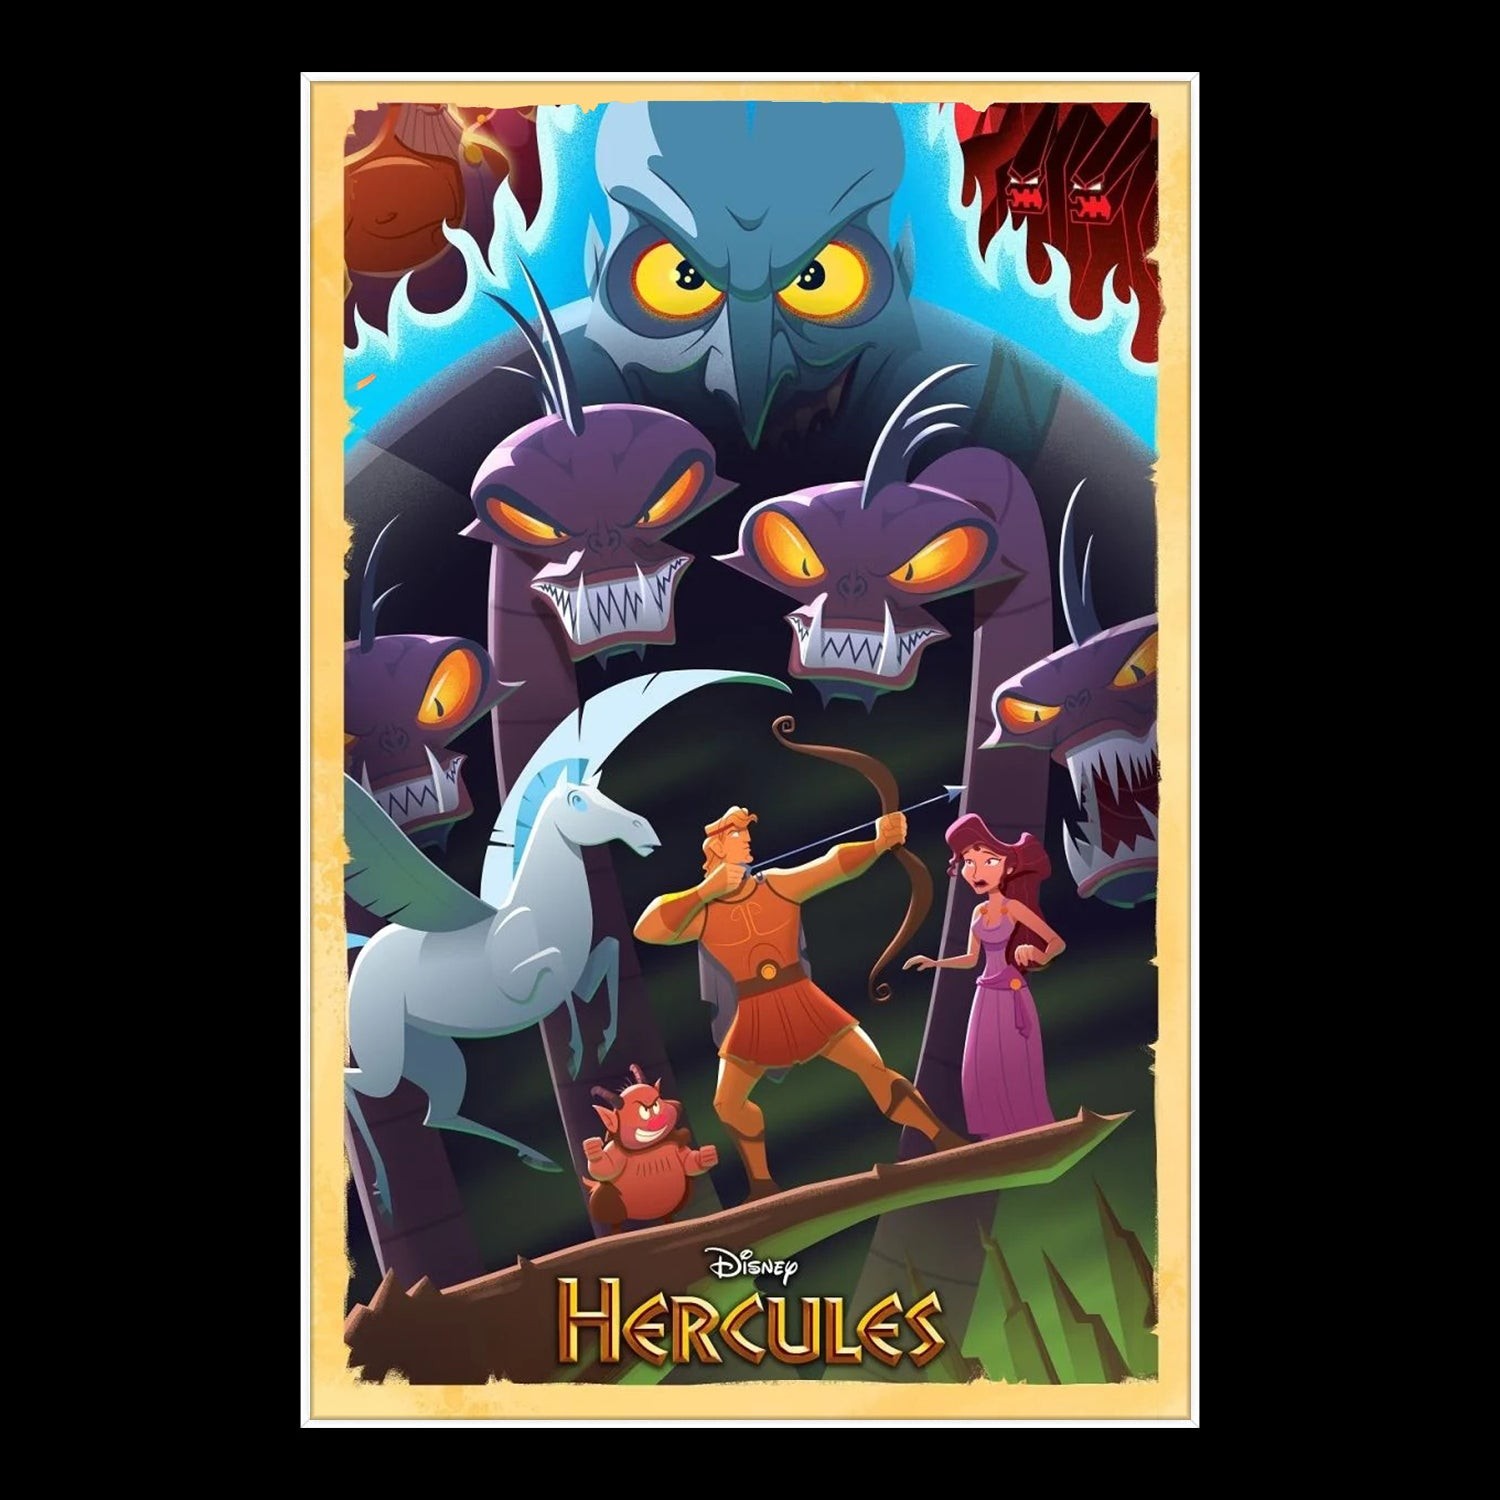 hercules 1997 poster